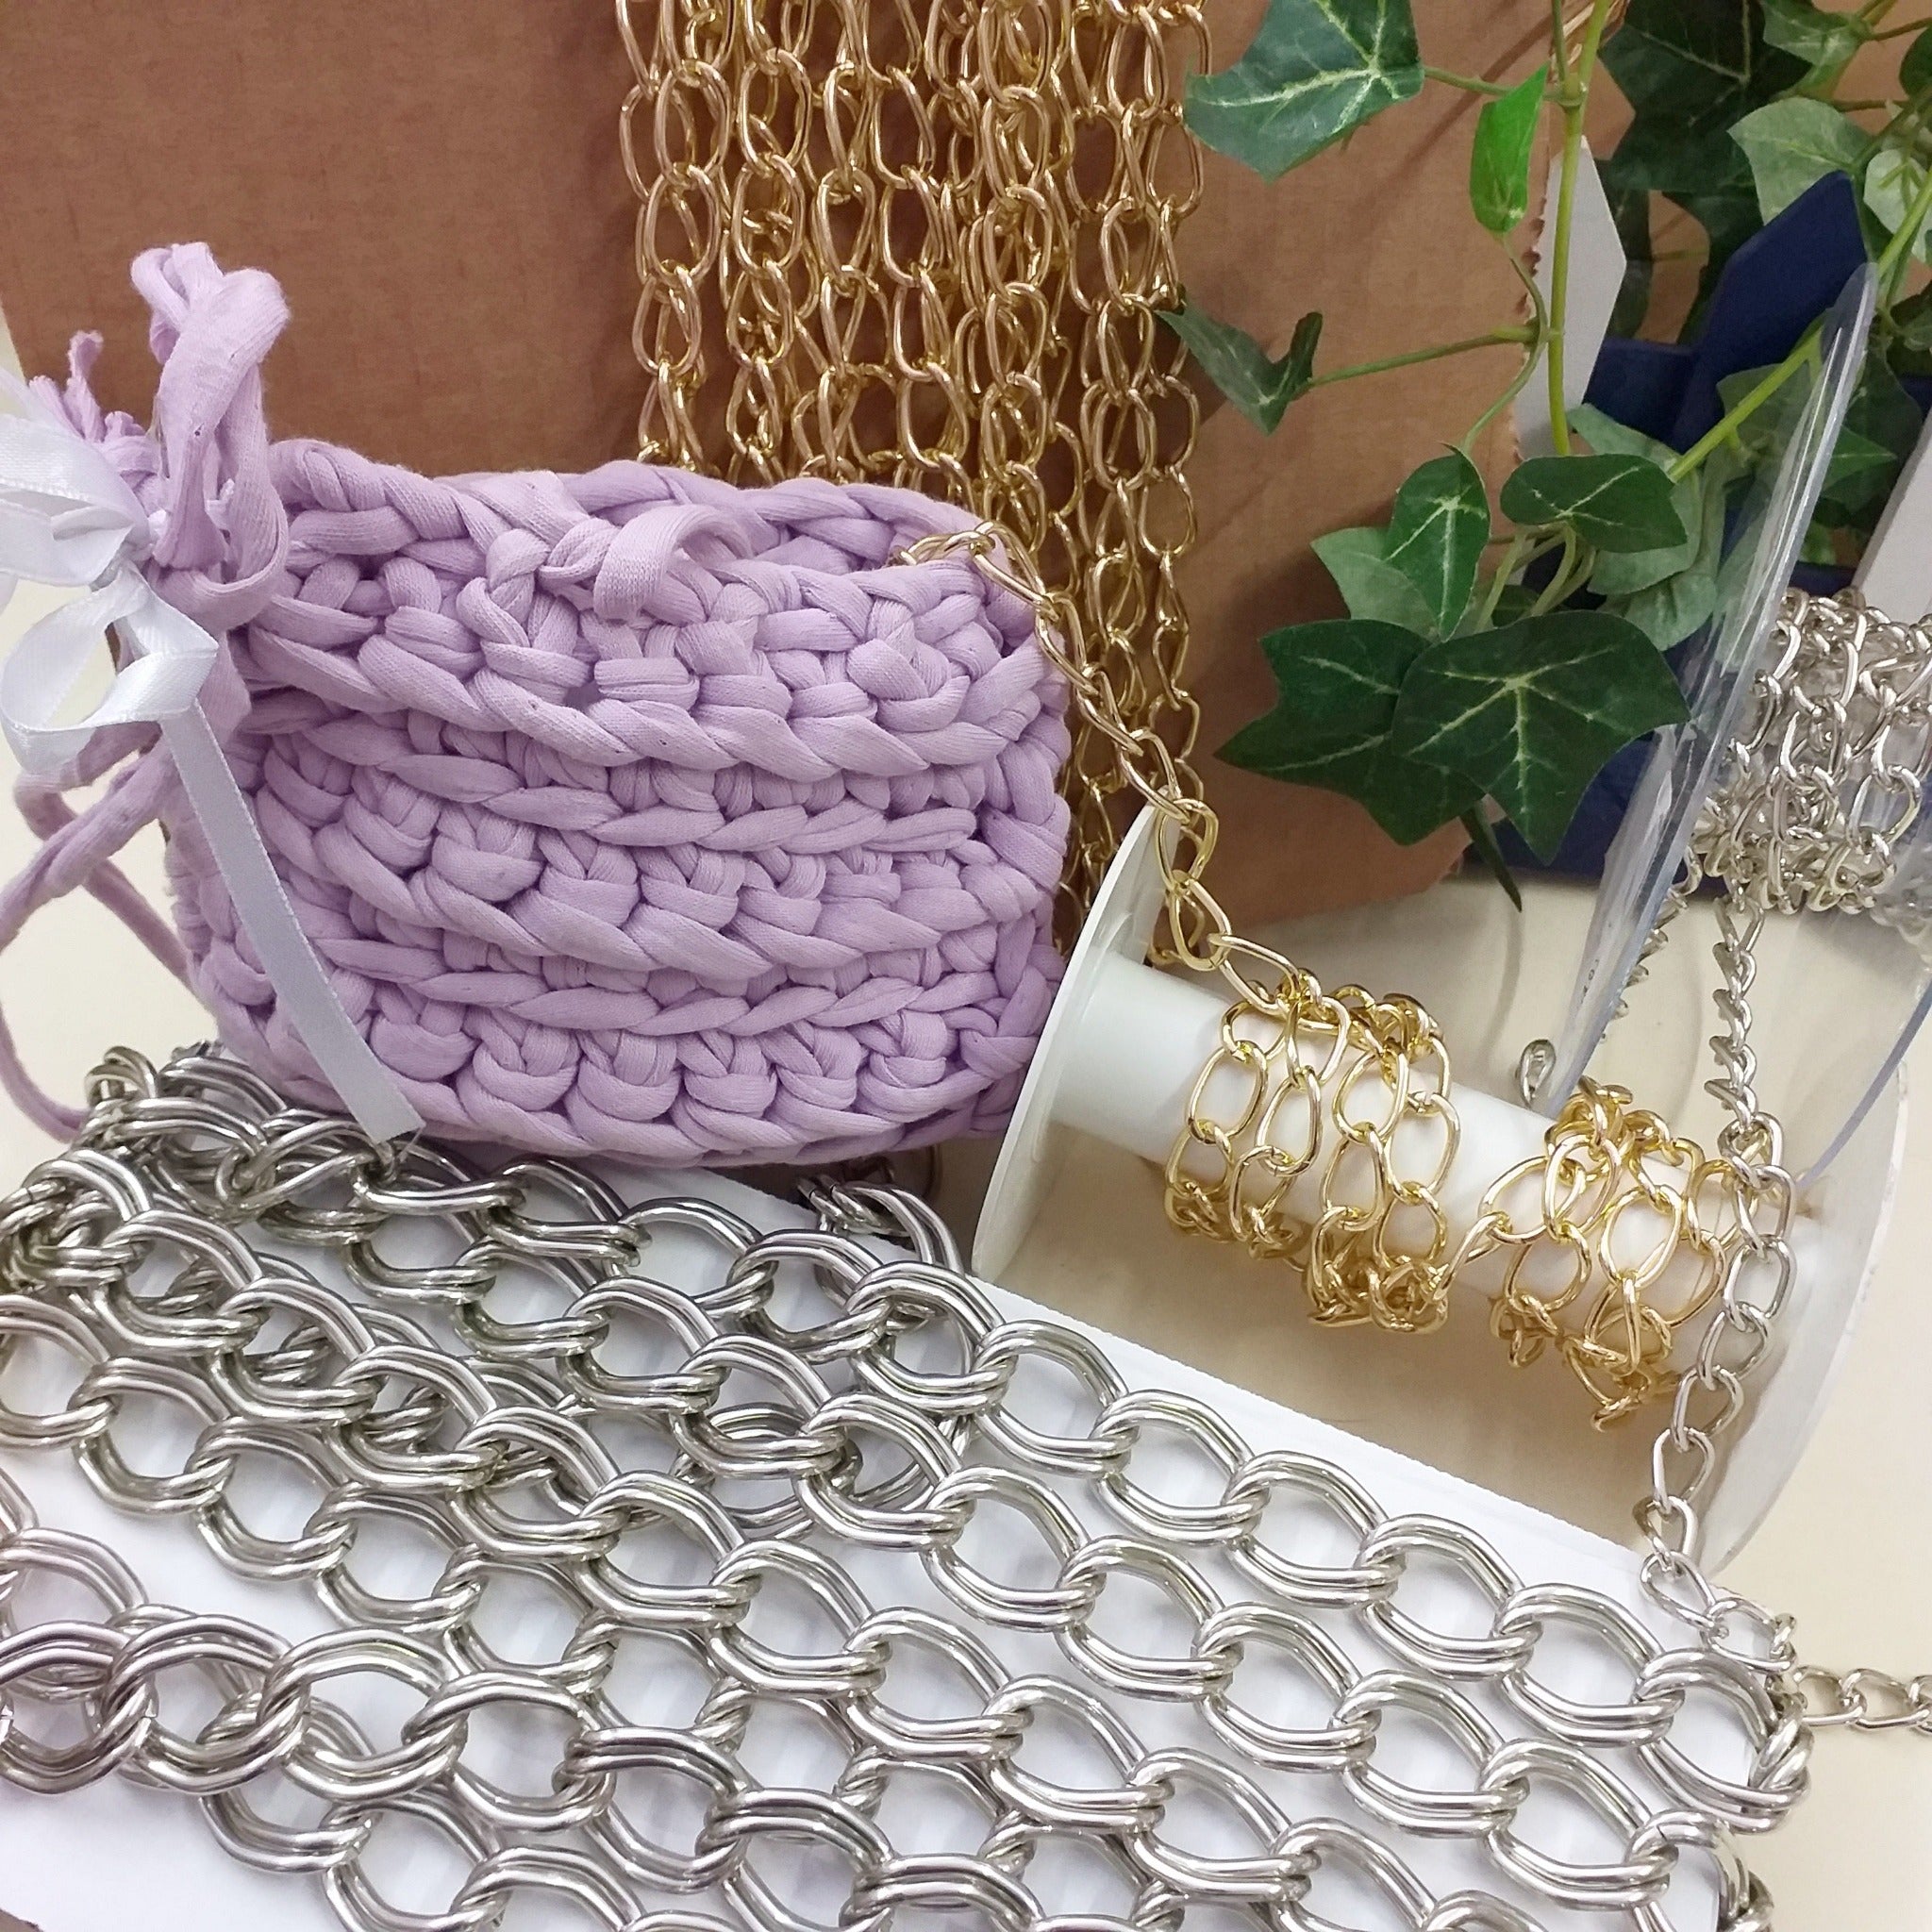 Kit per realizzare braccialetti elastici Primavera: oltre 15 braccialetti  con perline fai da te, perline di legno, perle, pietre semipreziose,  perline di osso, regali creativi -  Italia